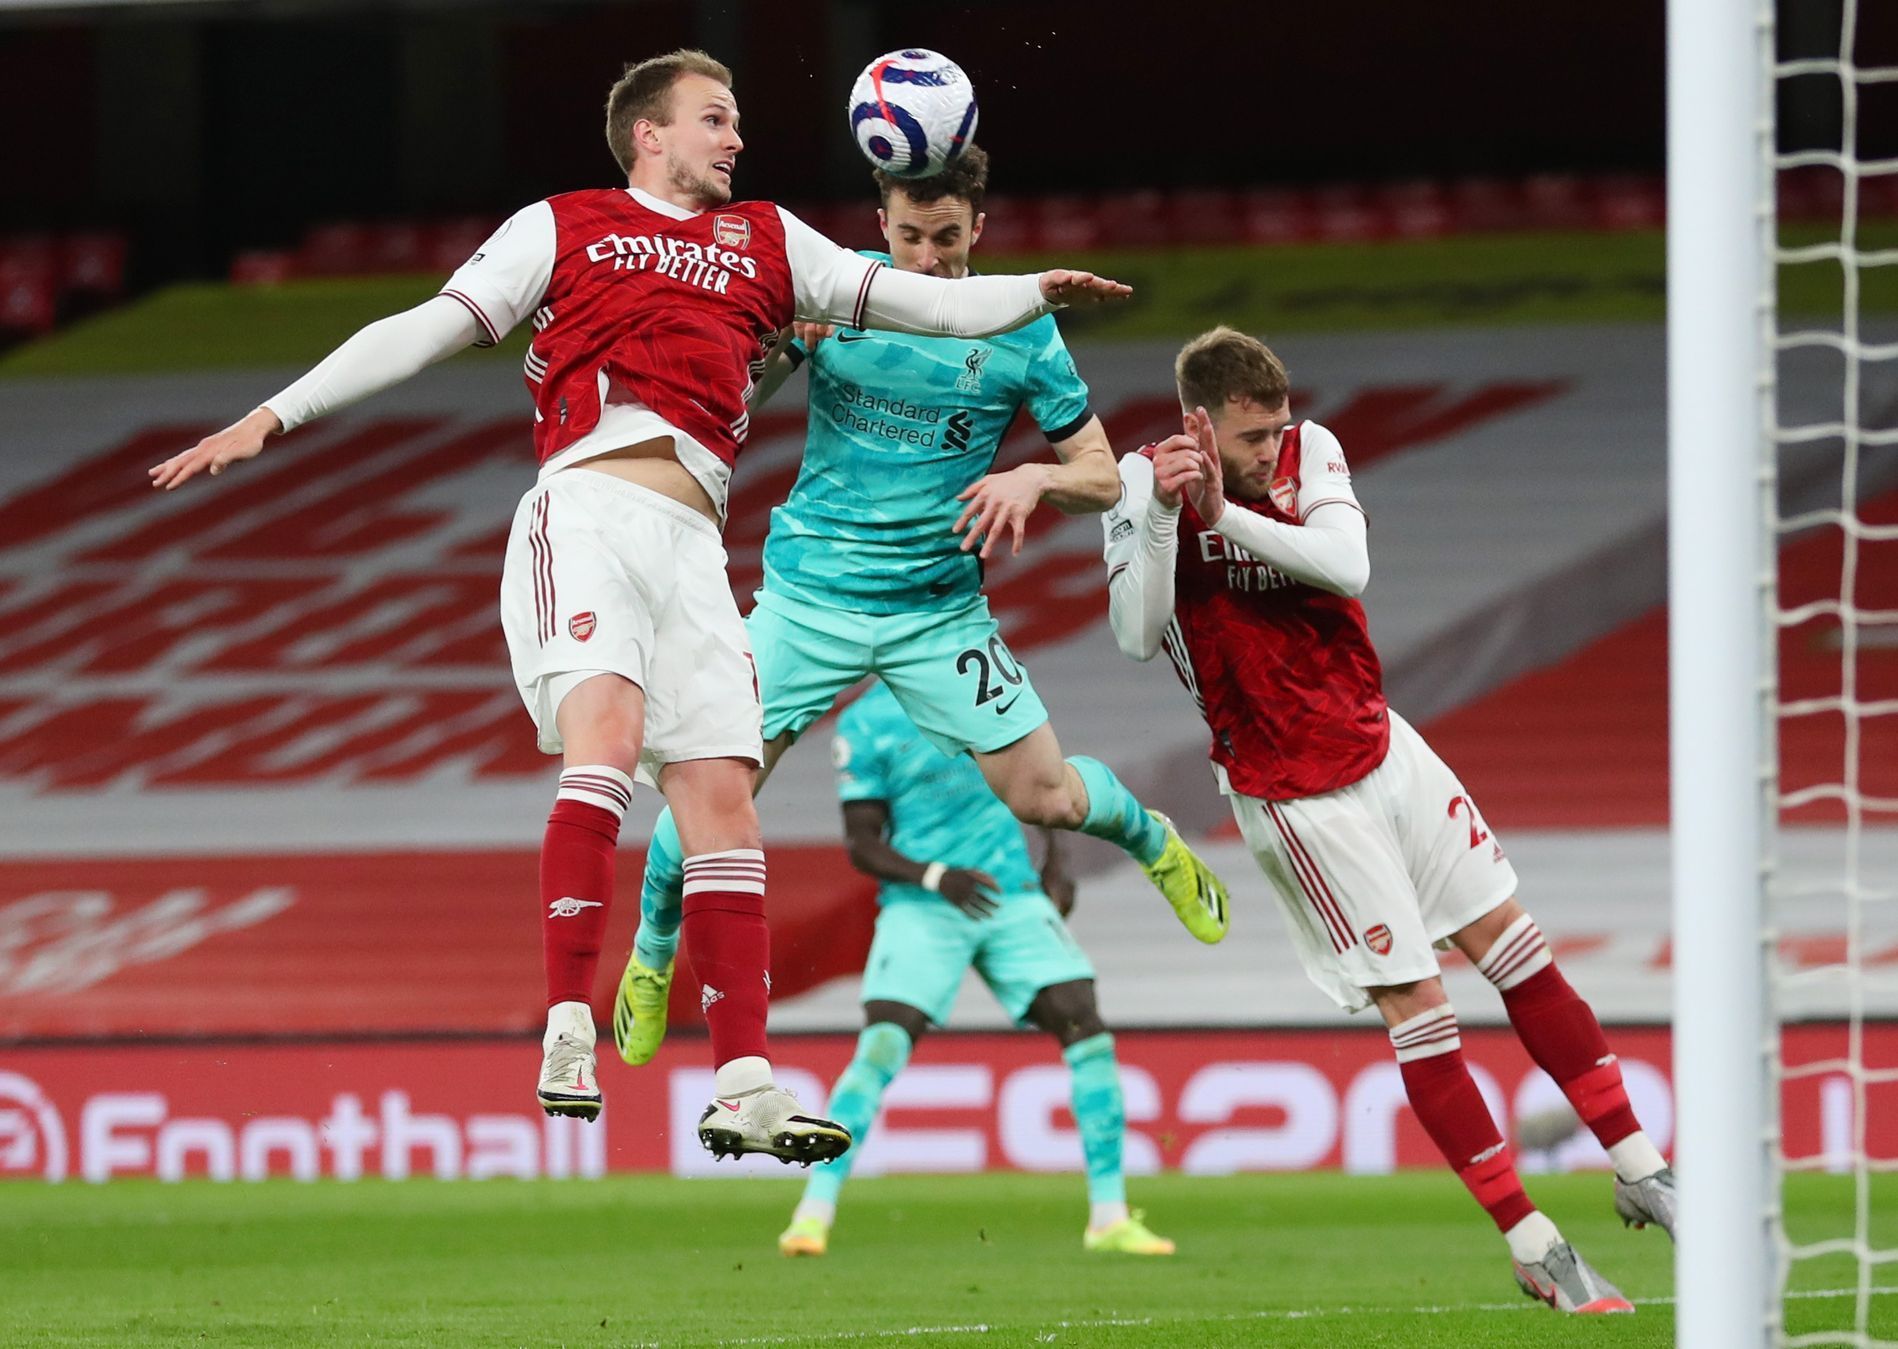 fotbal, anglická liga 2020/2021, Premier League - Arsenal v Liverpool, Diogo Jota střílí gól